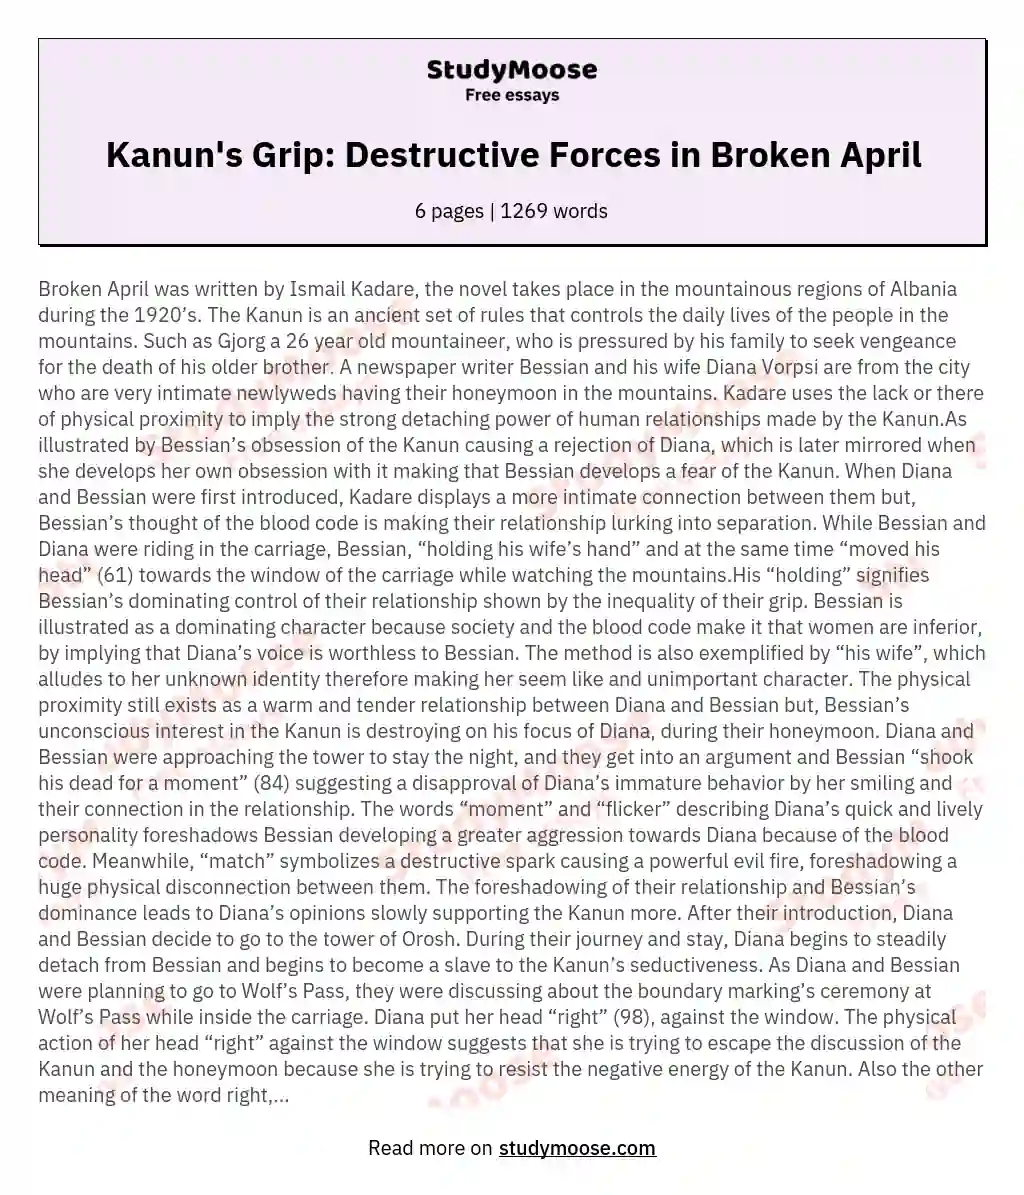 Kanun's Grip: Destructive Forces in Broken April essay